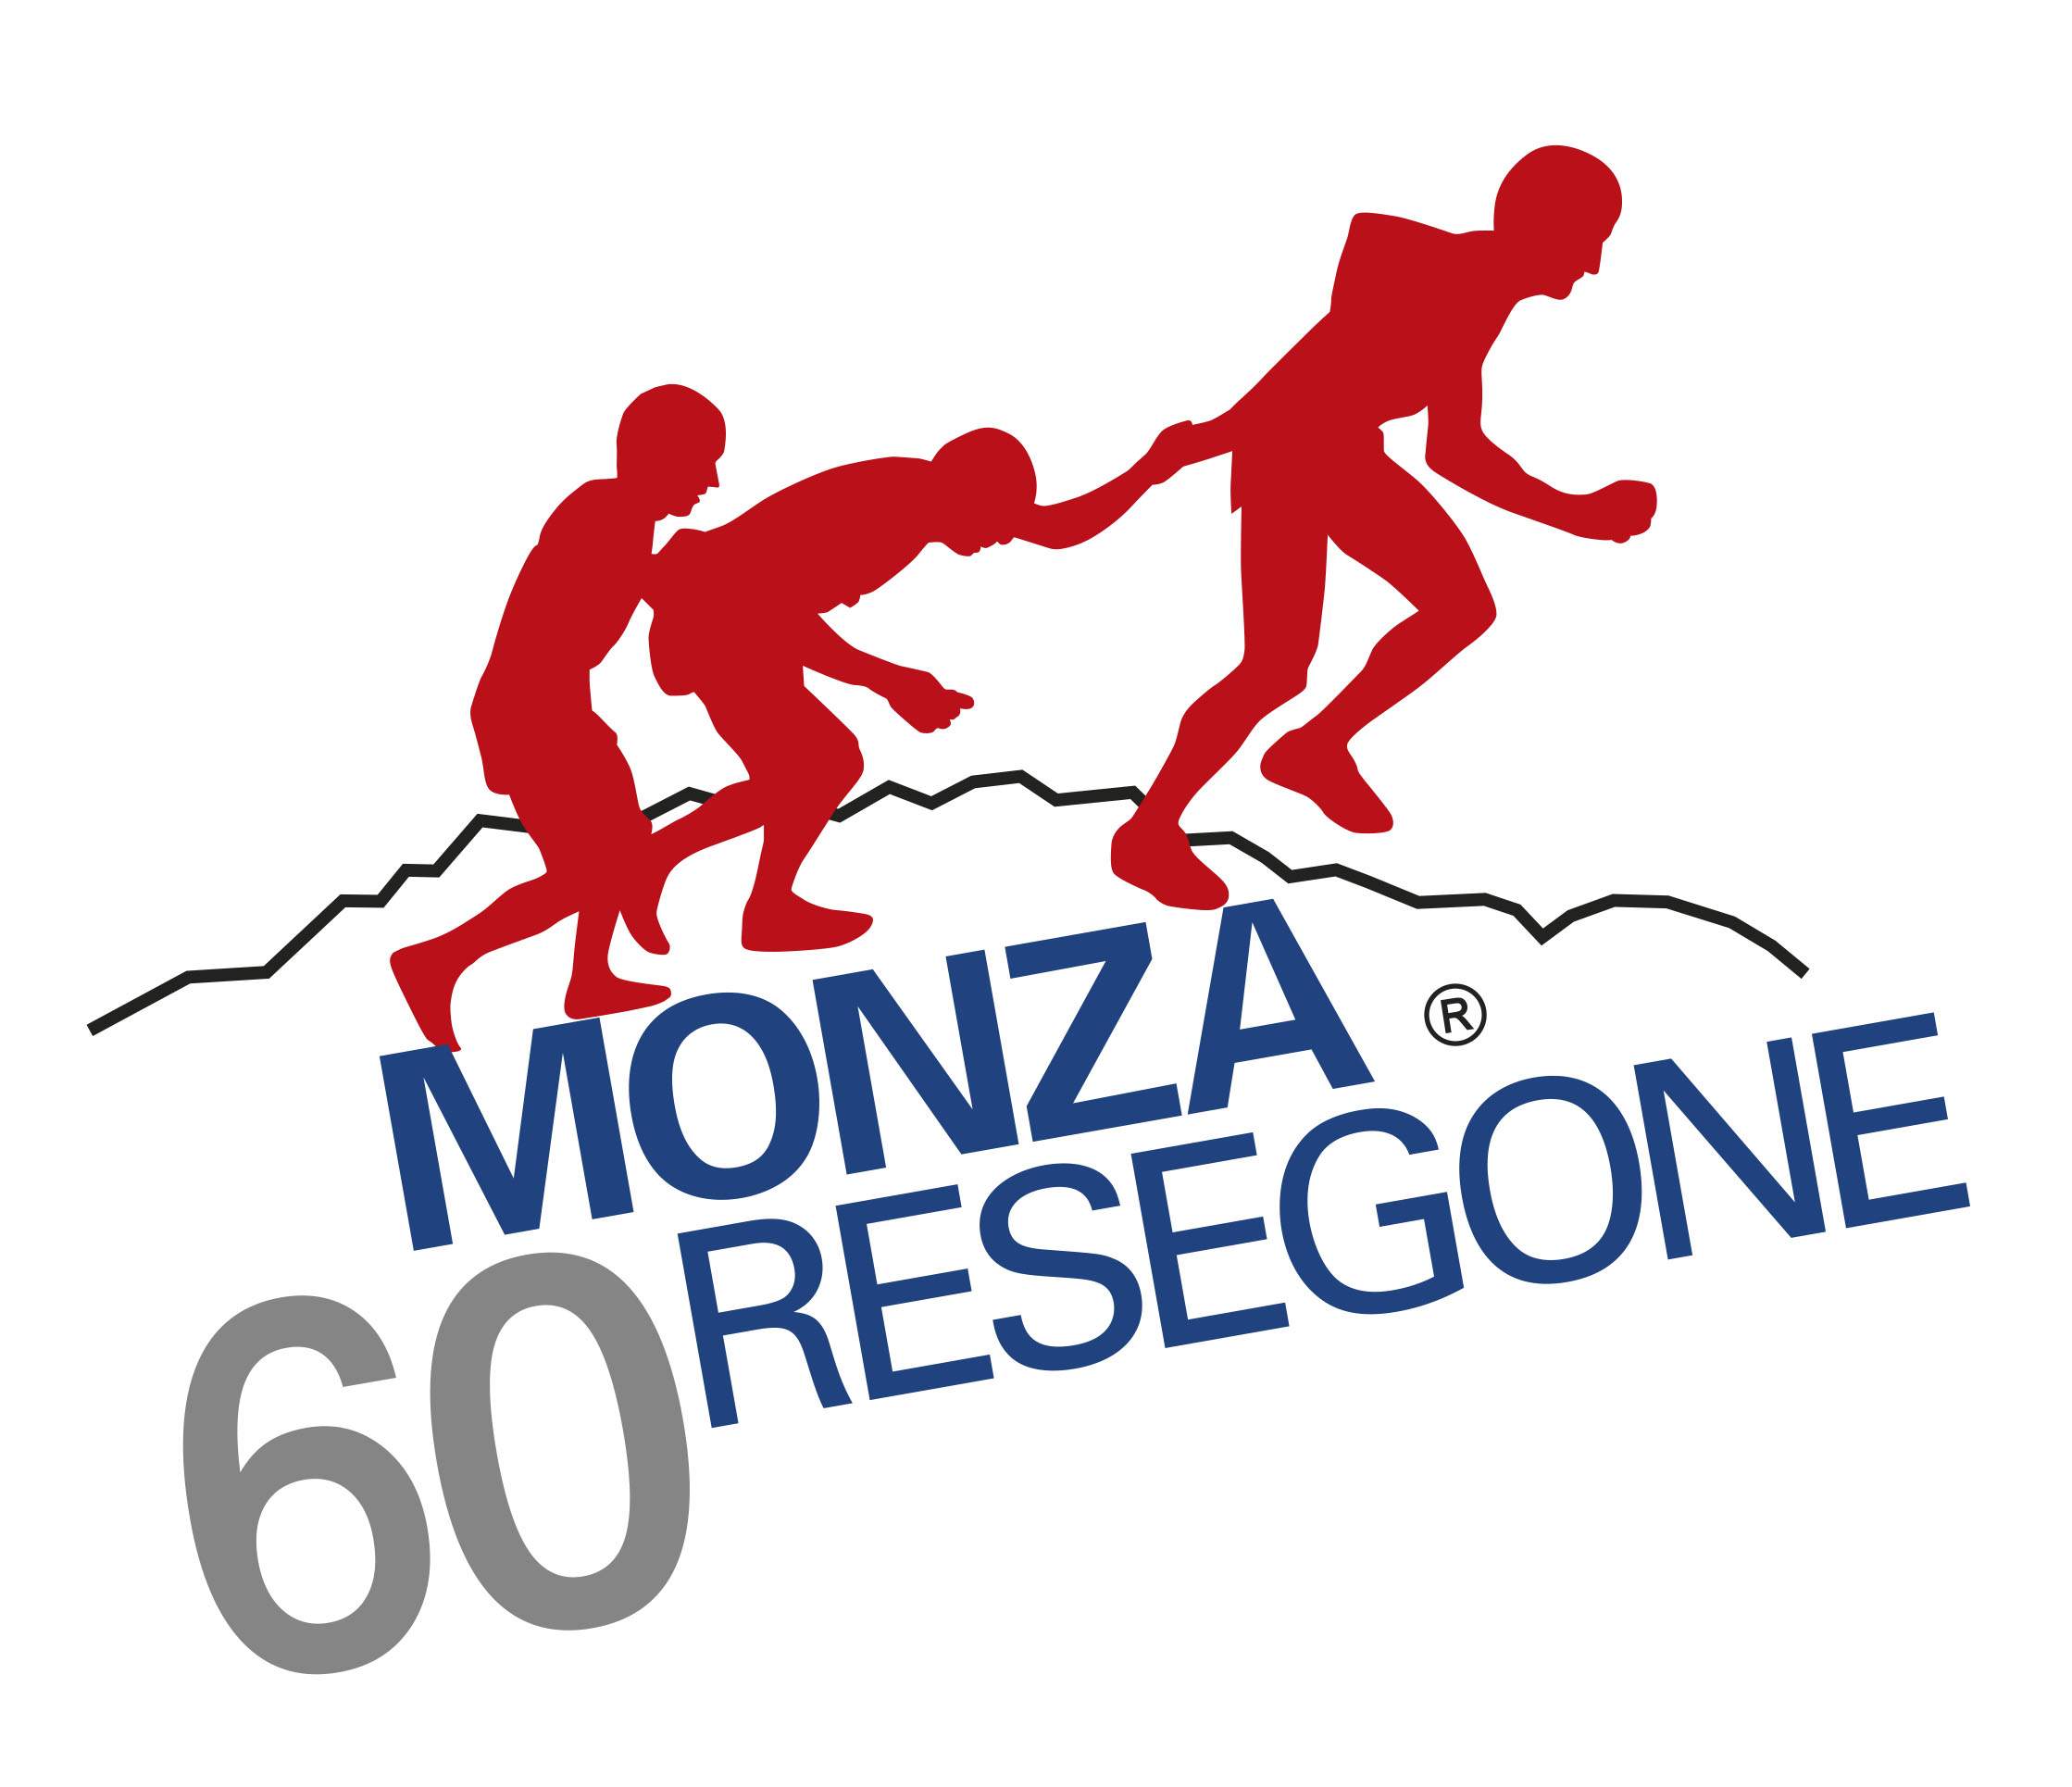 Monza Resegone, si corre il 25 giugno